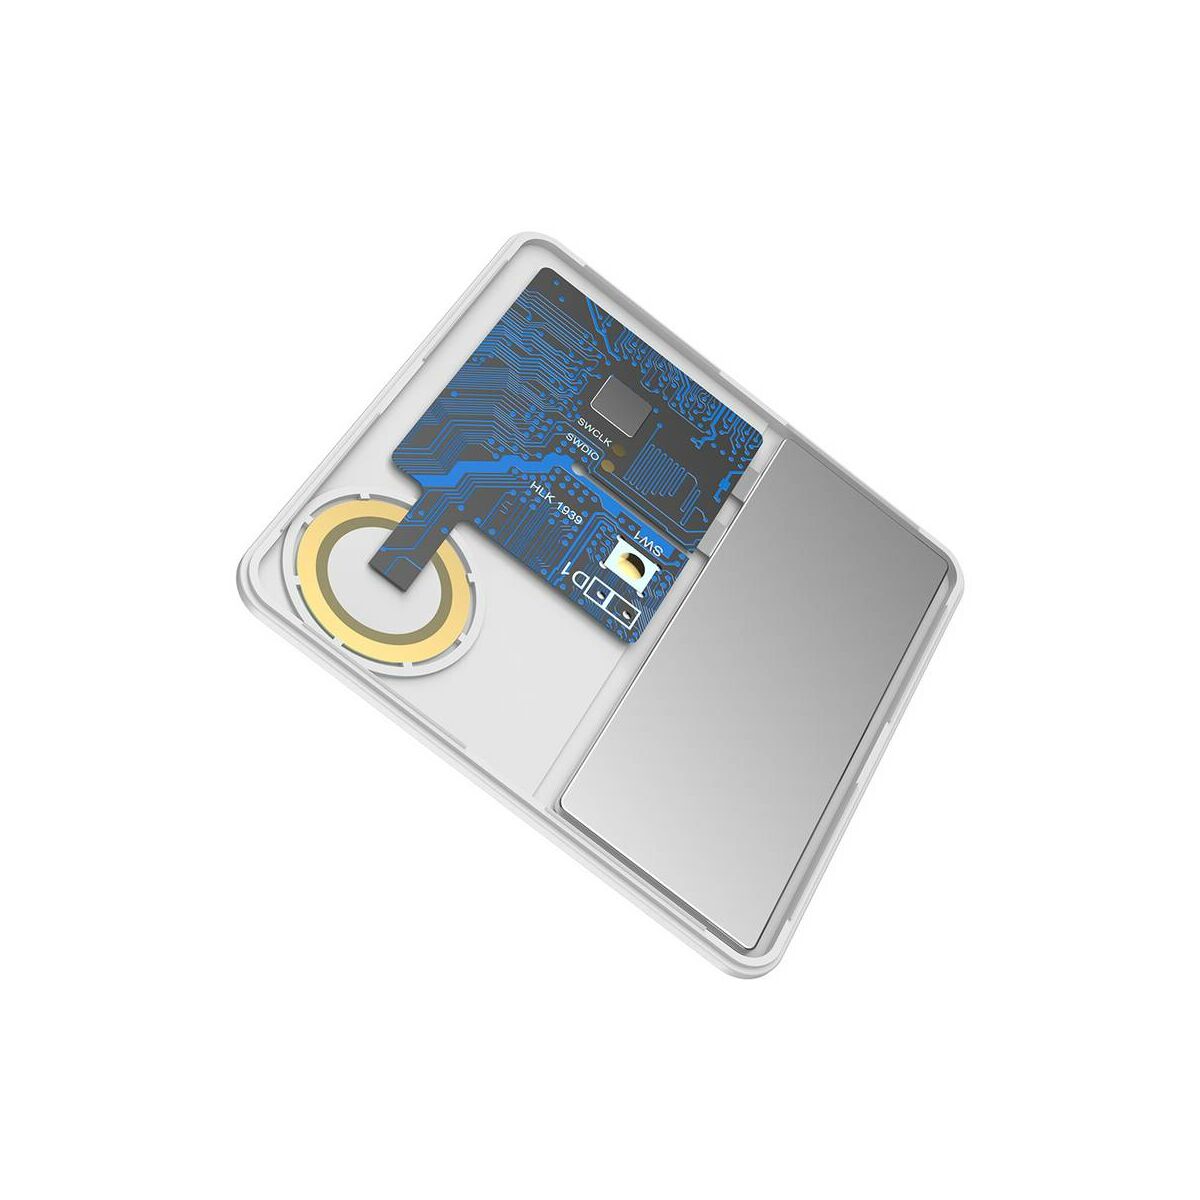 Kép 4/8 - Baseus otthon, Intelligens T1 mini lapos kártya forma, elveszett eszközök/kulcsok megtalálásához eszköz és detektor, fehér (ZLFDQT1-02)